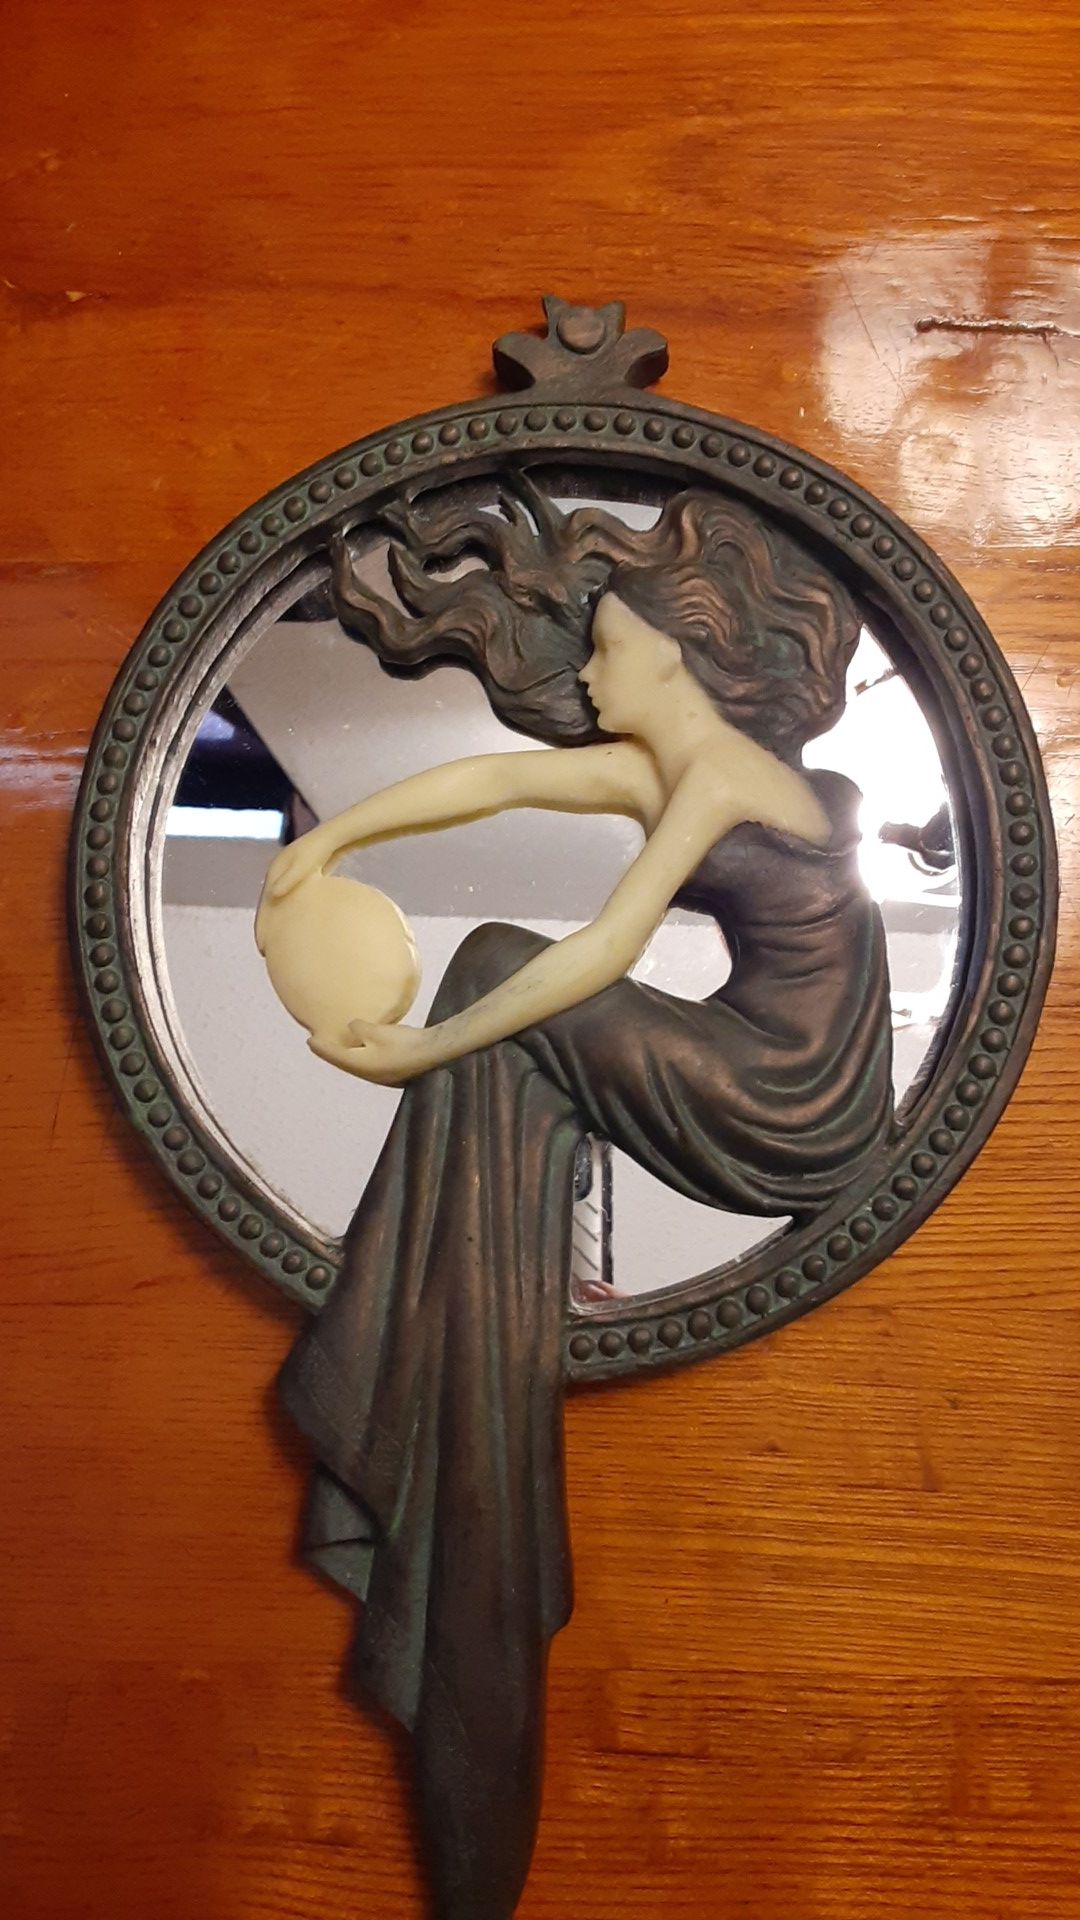 Toscano European Hand Crafted sculpture mirror